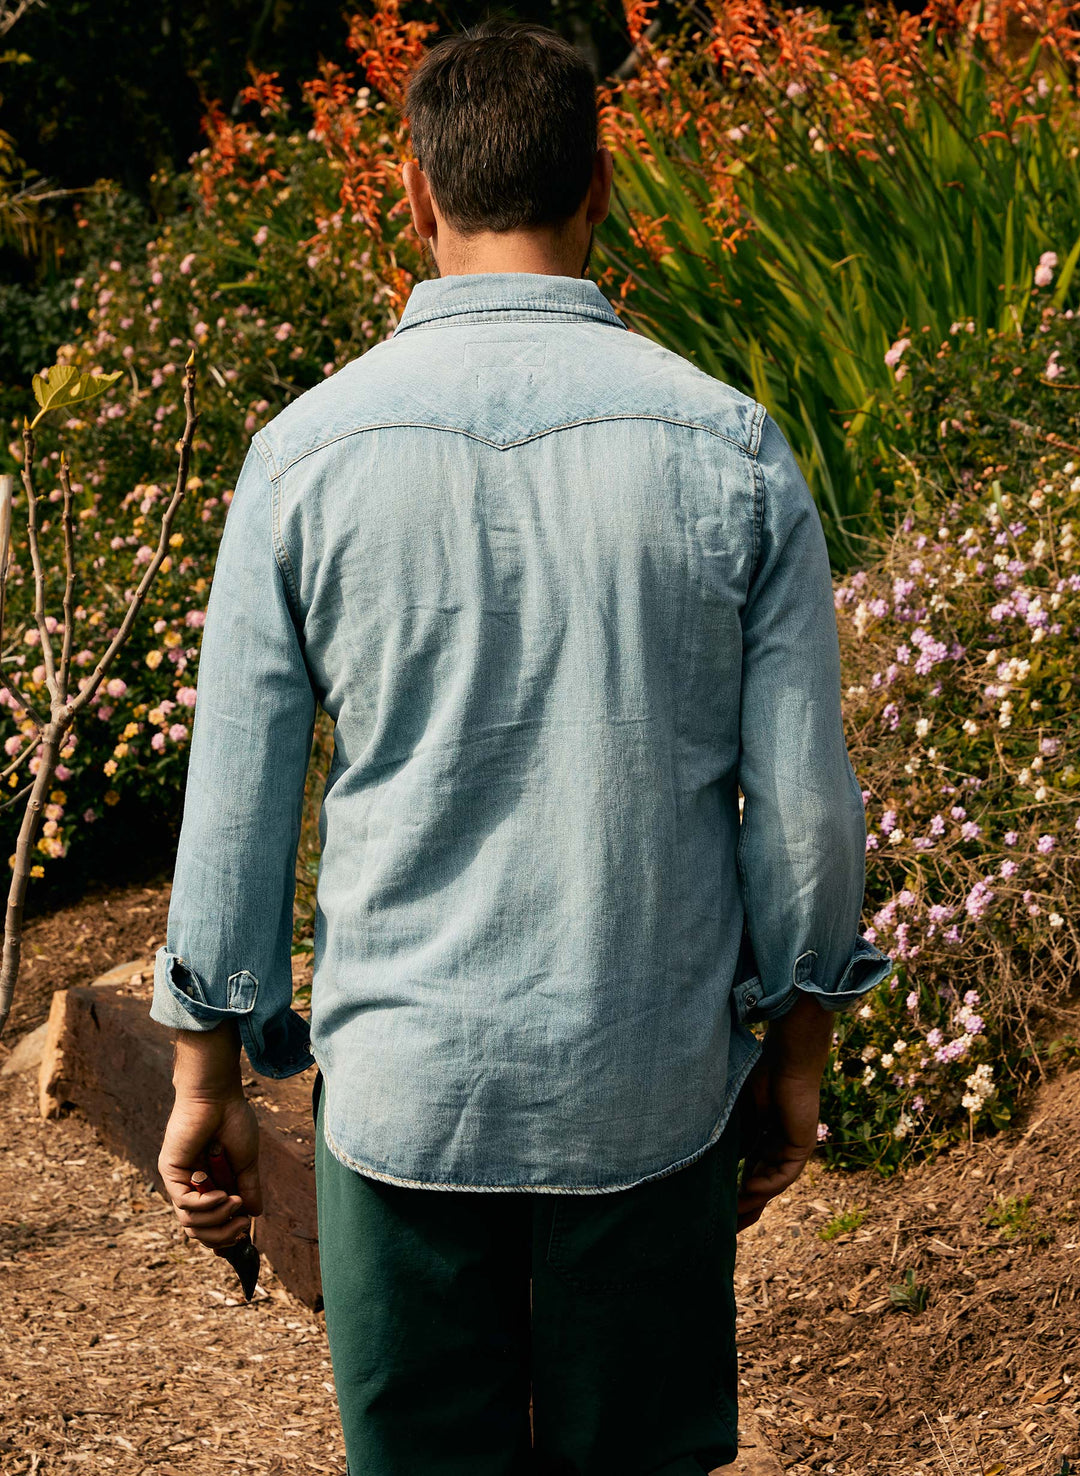 a man standing in a garden